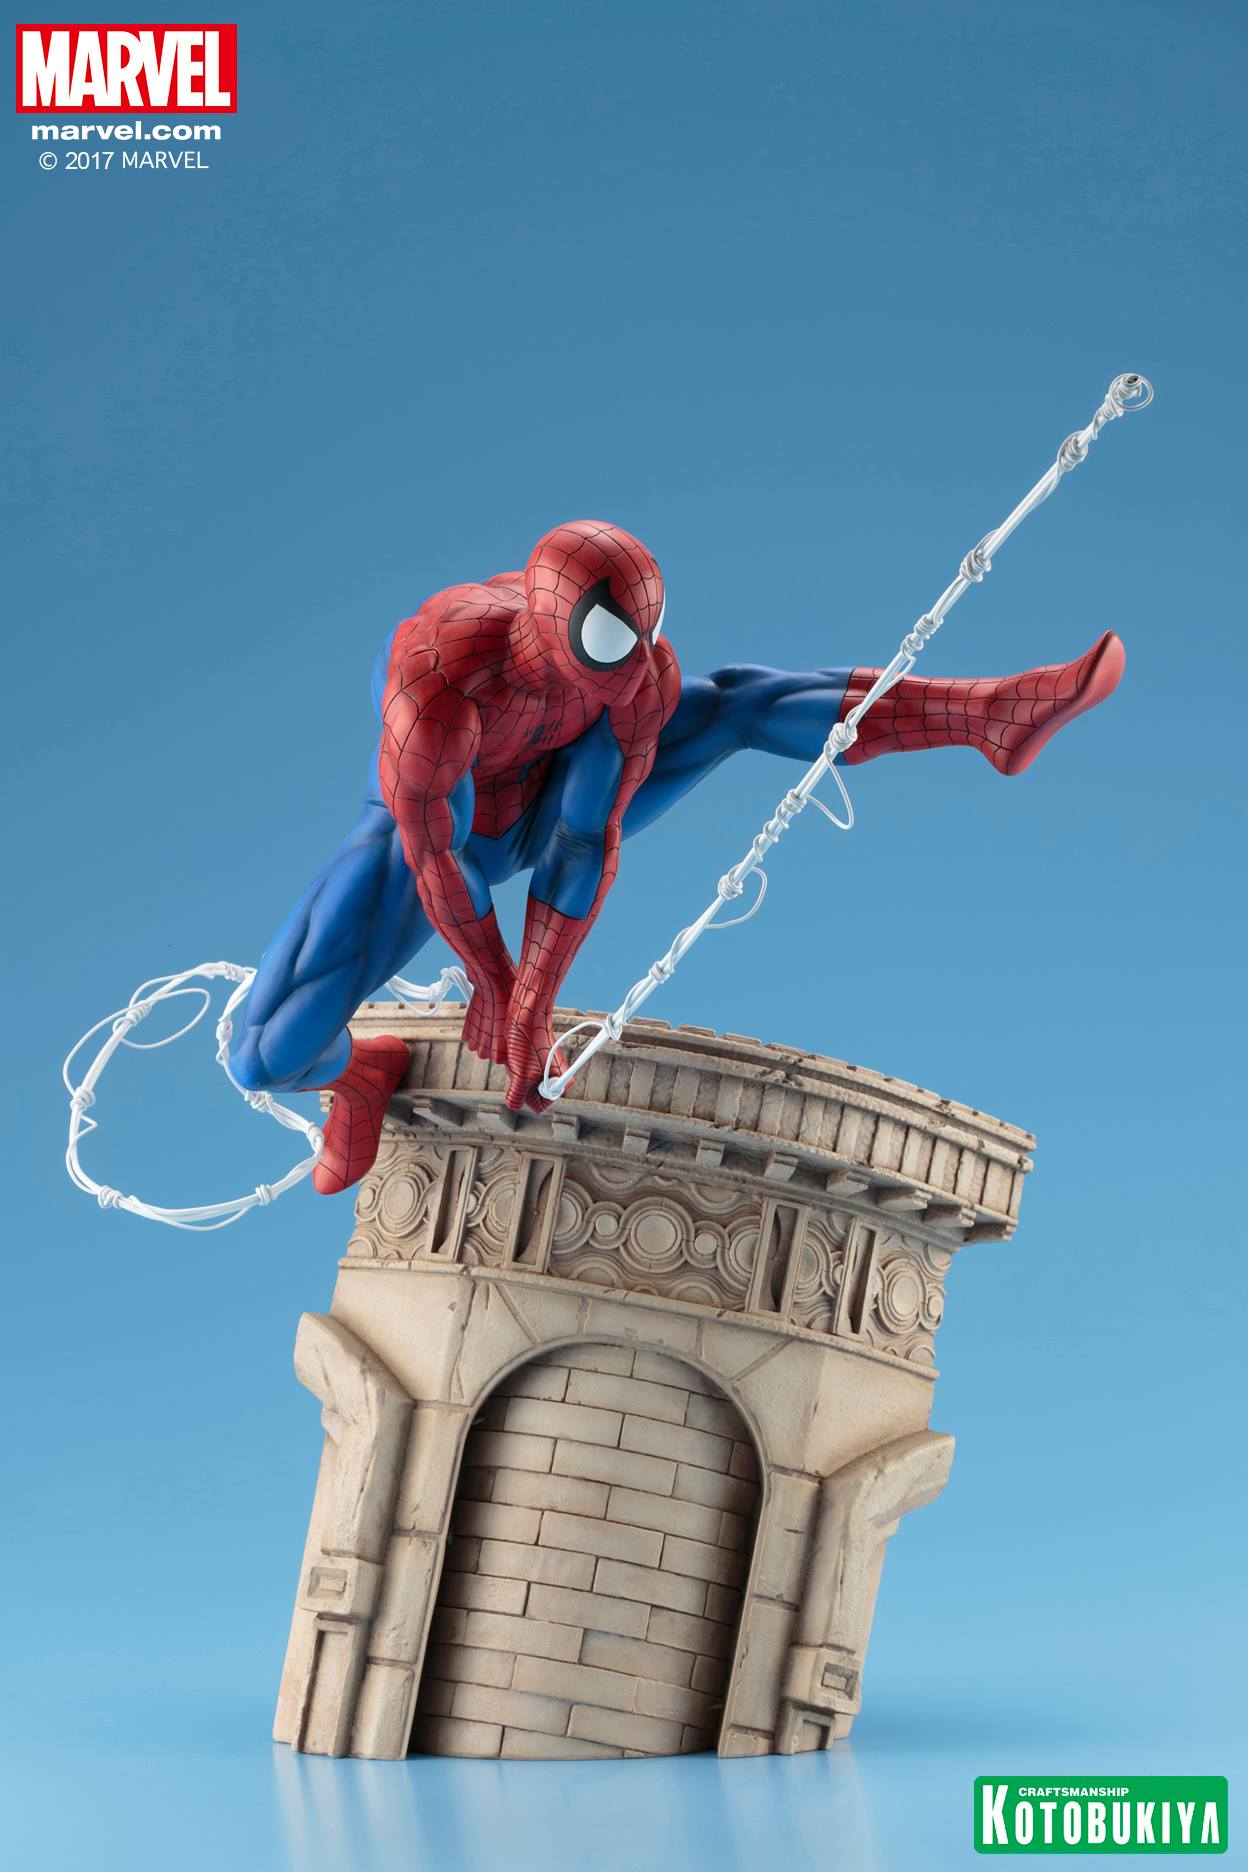 Kotobukiya - ARTFX+ - Marvel Universe - Spider-Man Webslinger - Marvelous Toys